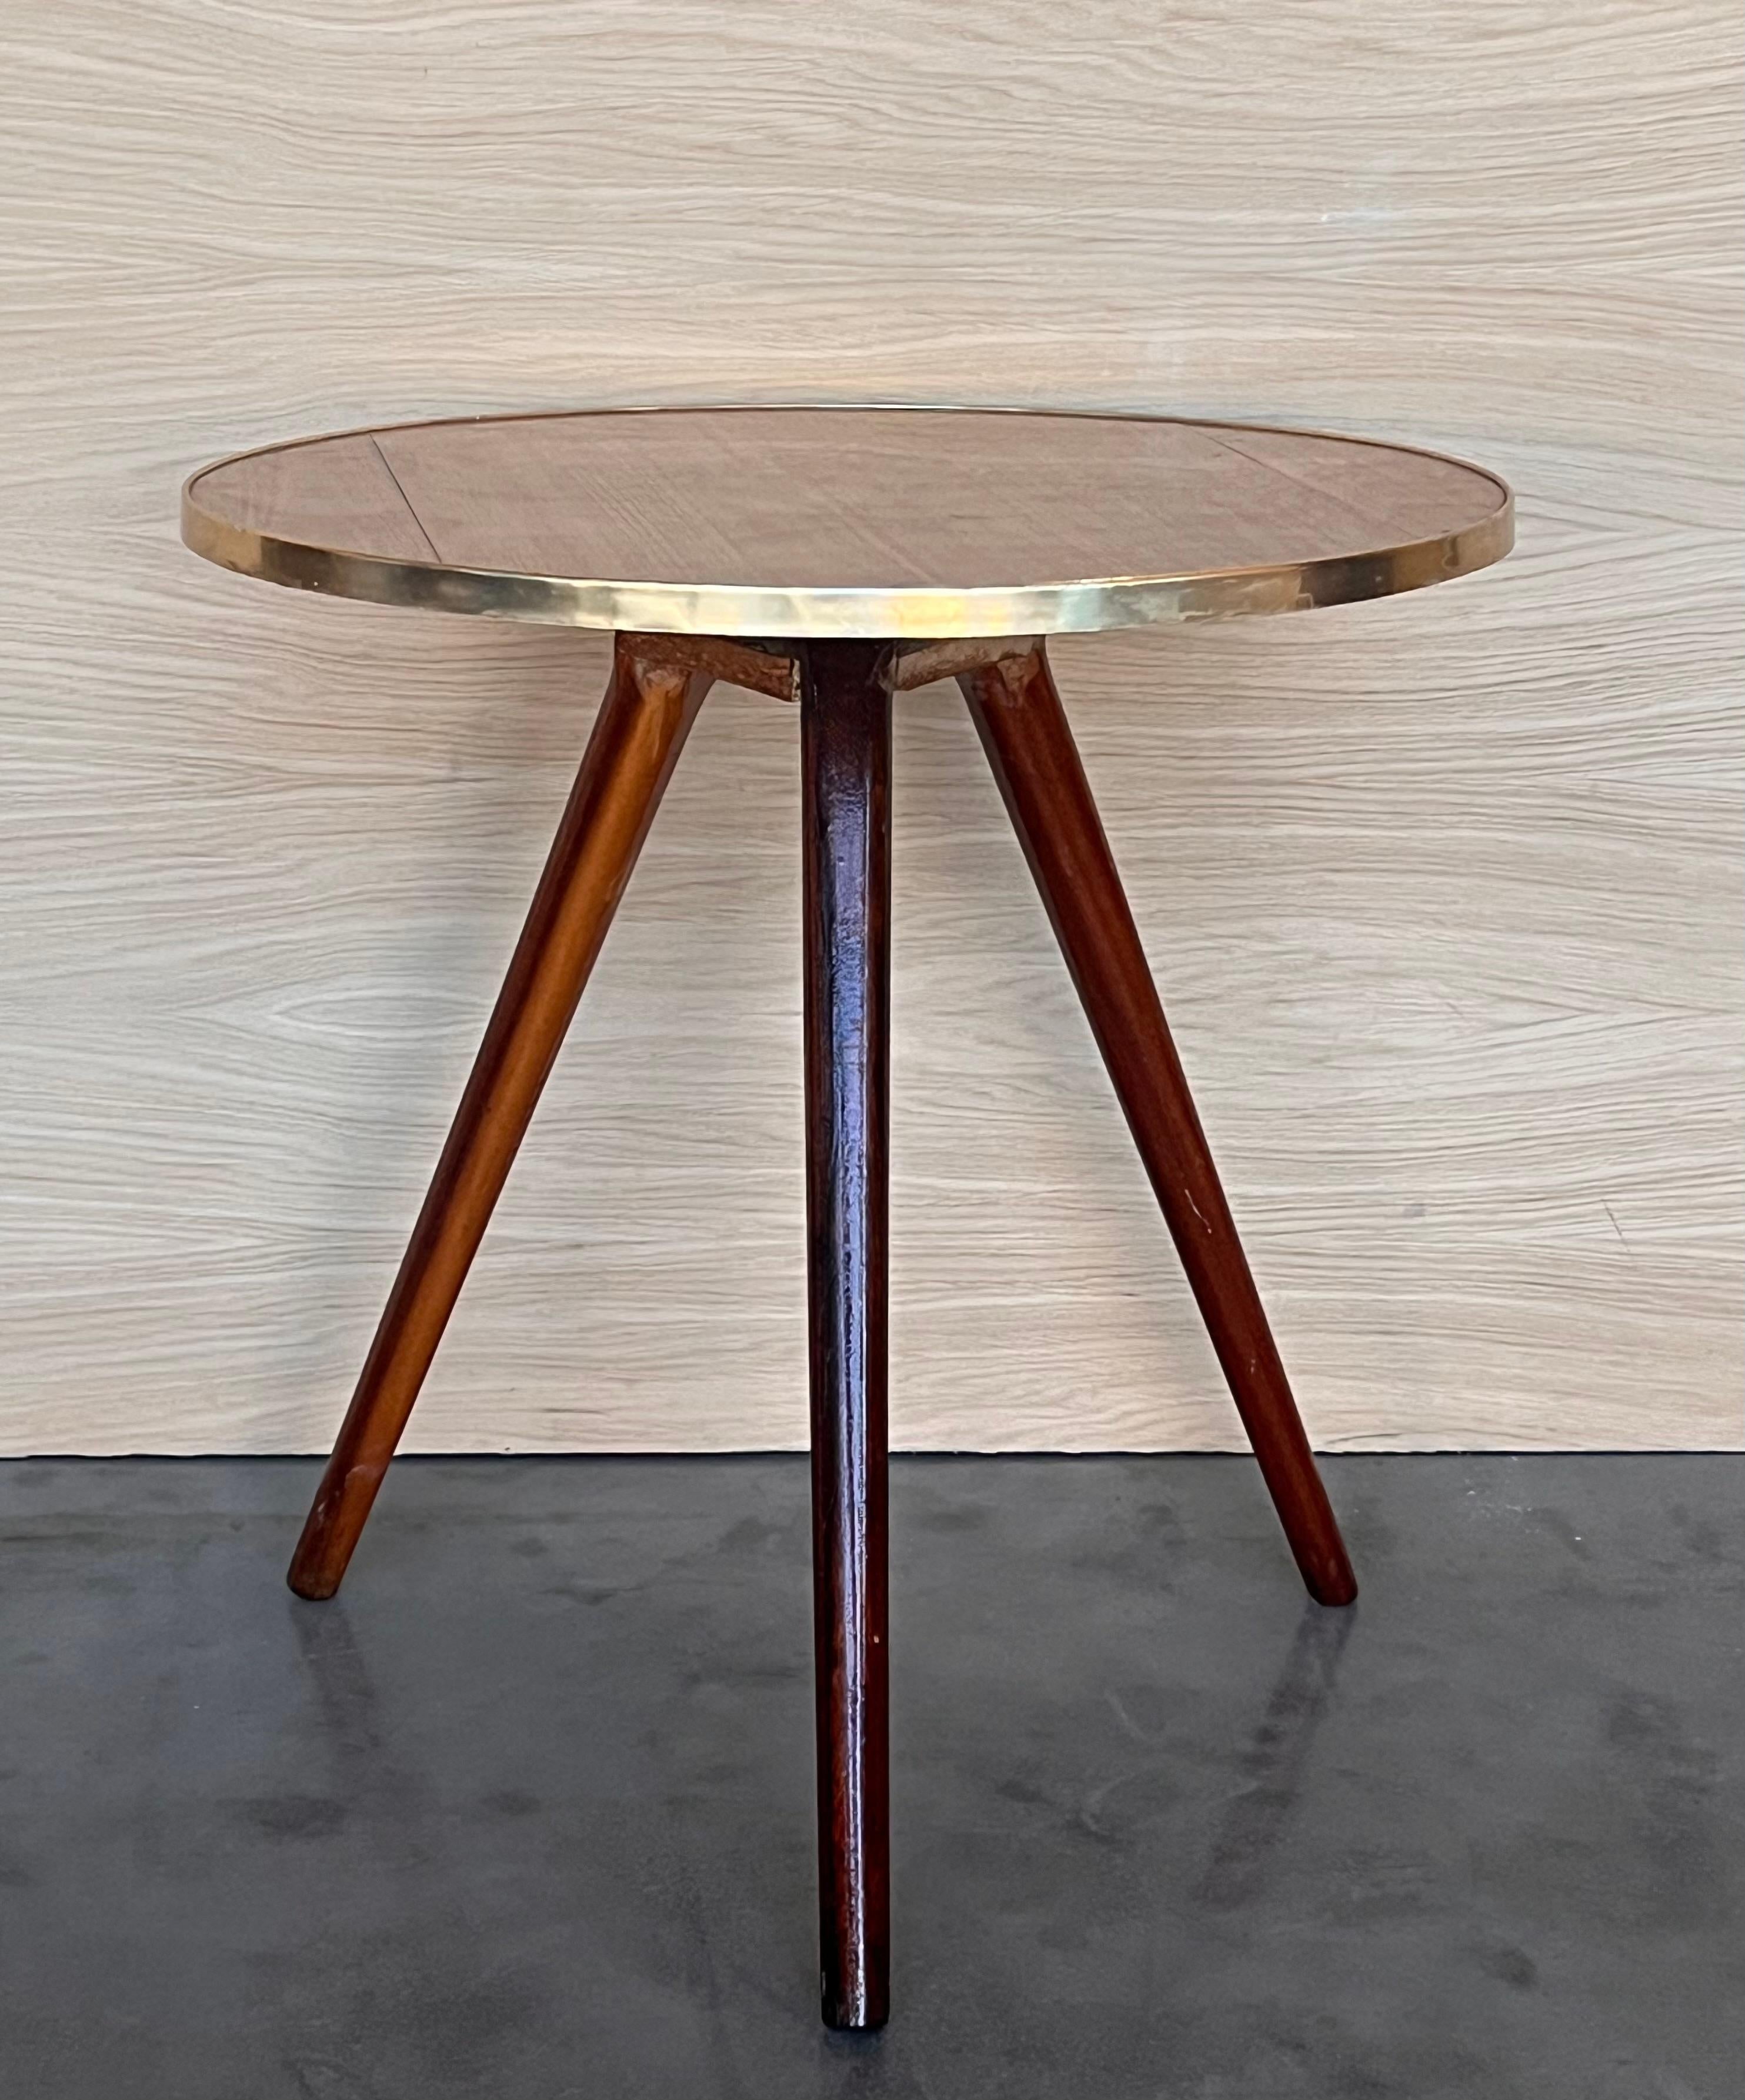 Magnifique  table d'appoint vintage, style italien, avec une base ronde en bois  bord en laiton reposant sur des pieds en bois. 
Cette table d'appoint a fière allure  dans une salle à manger et dans une salle de chevet. 
Il s'agit d'un guéridon ou